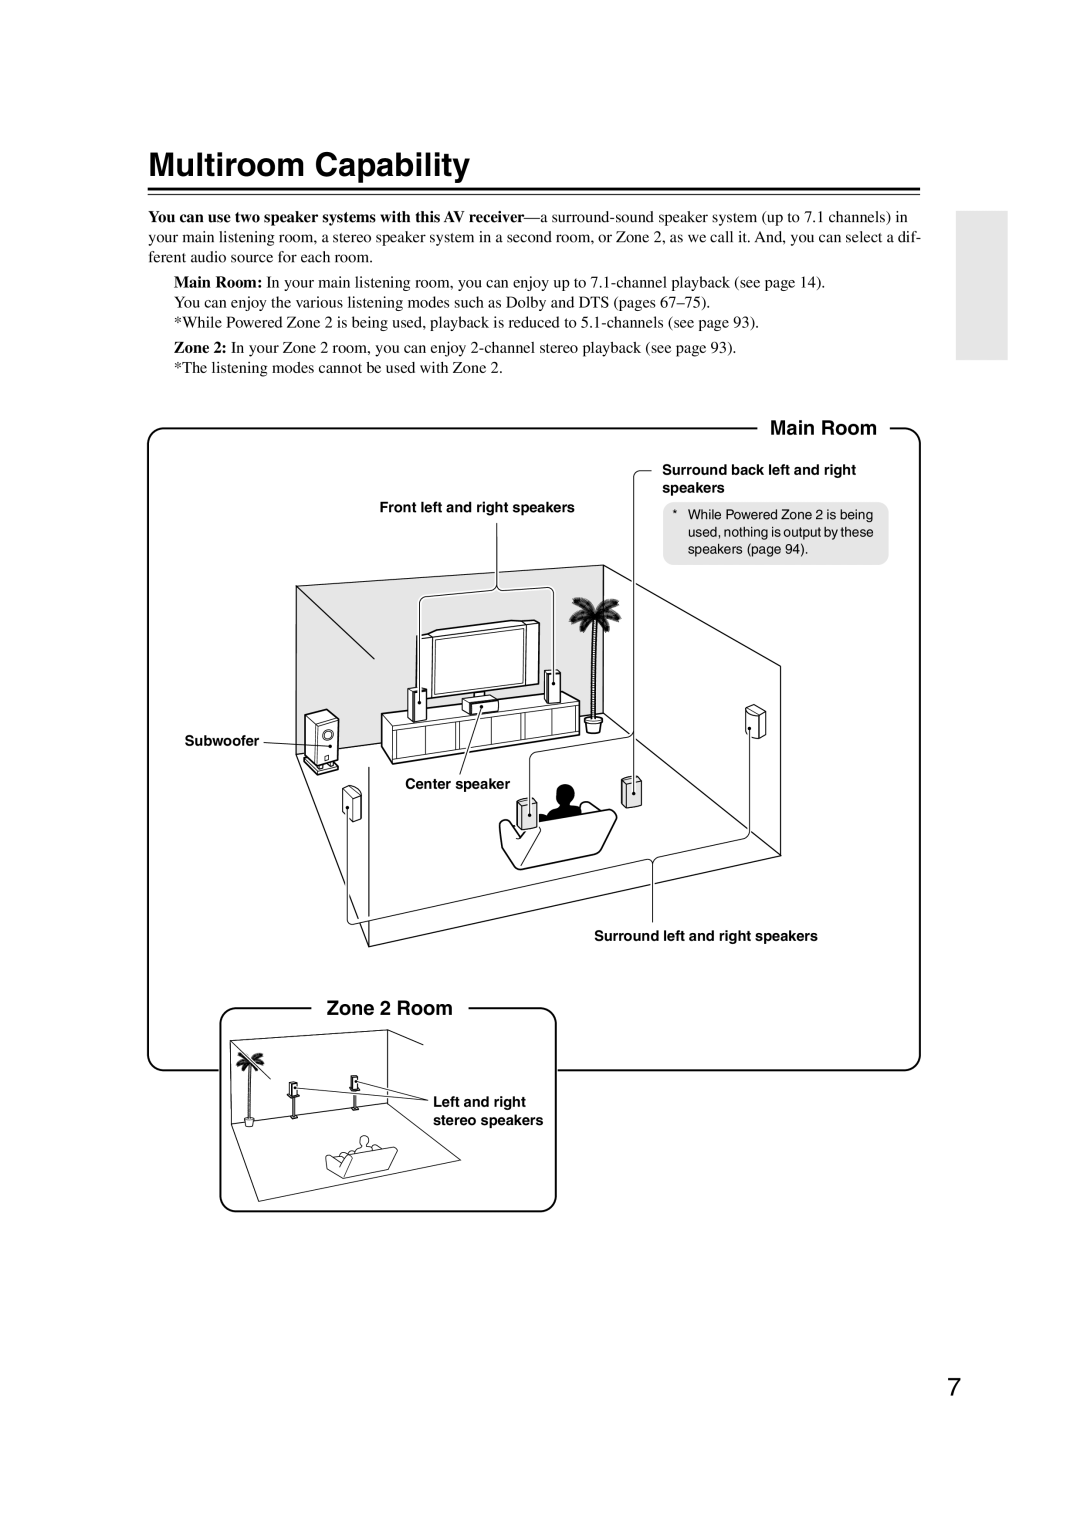 Integra DTR-5.9 instruction manual Multiroom Capability, Main Room, Zone 2 Room 